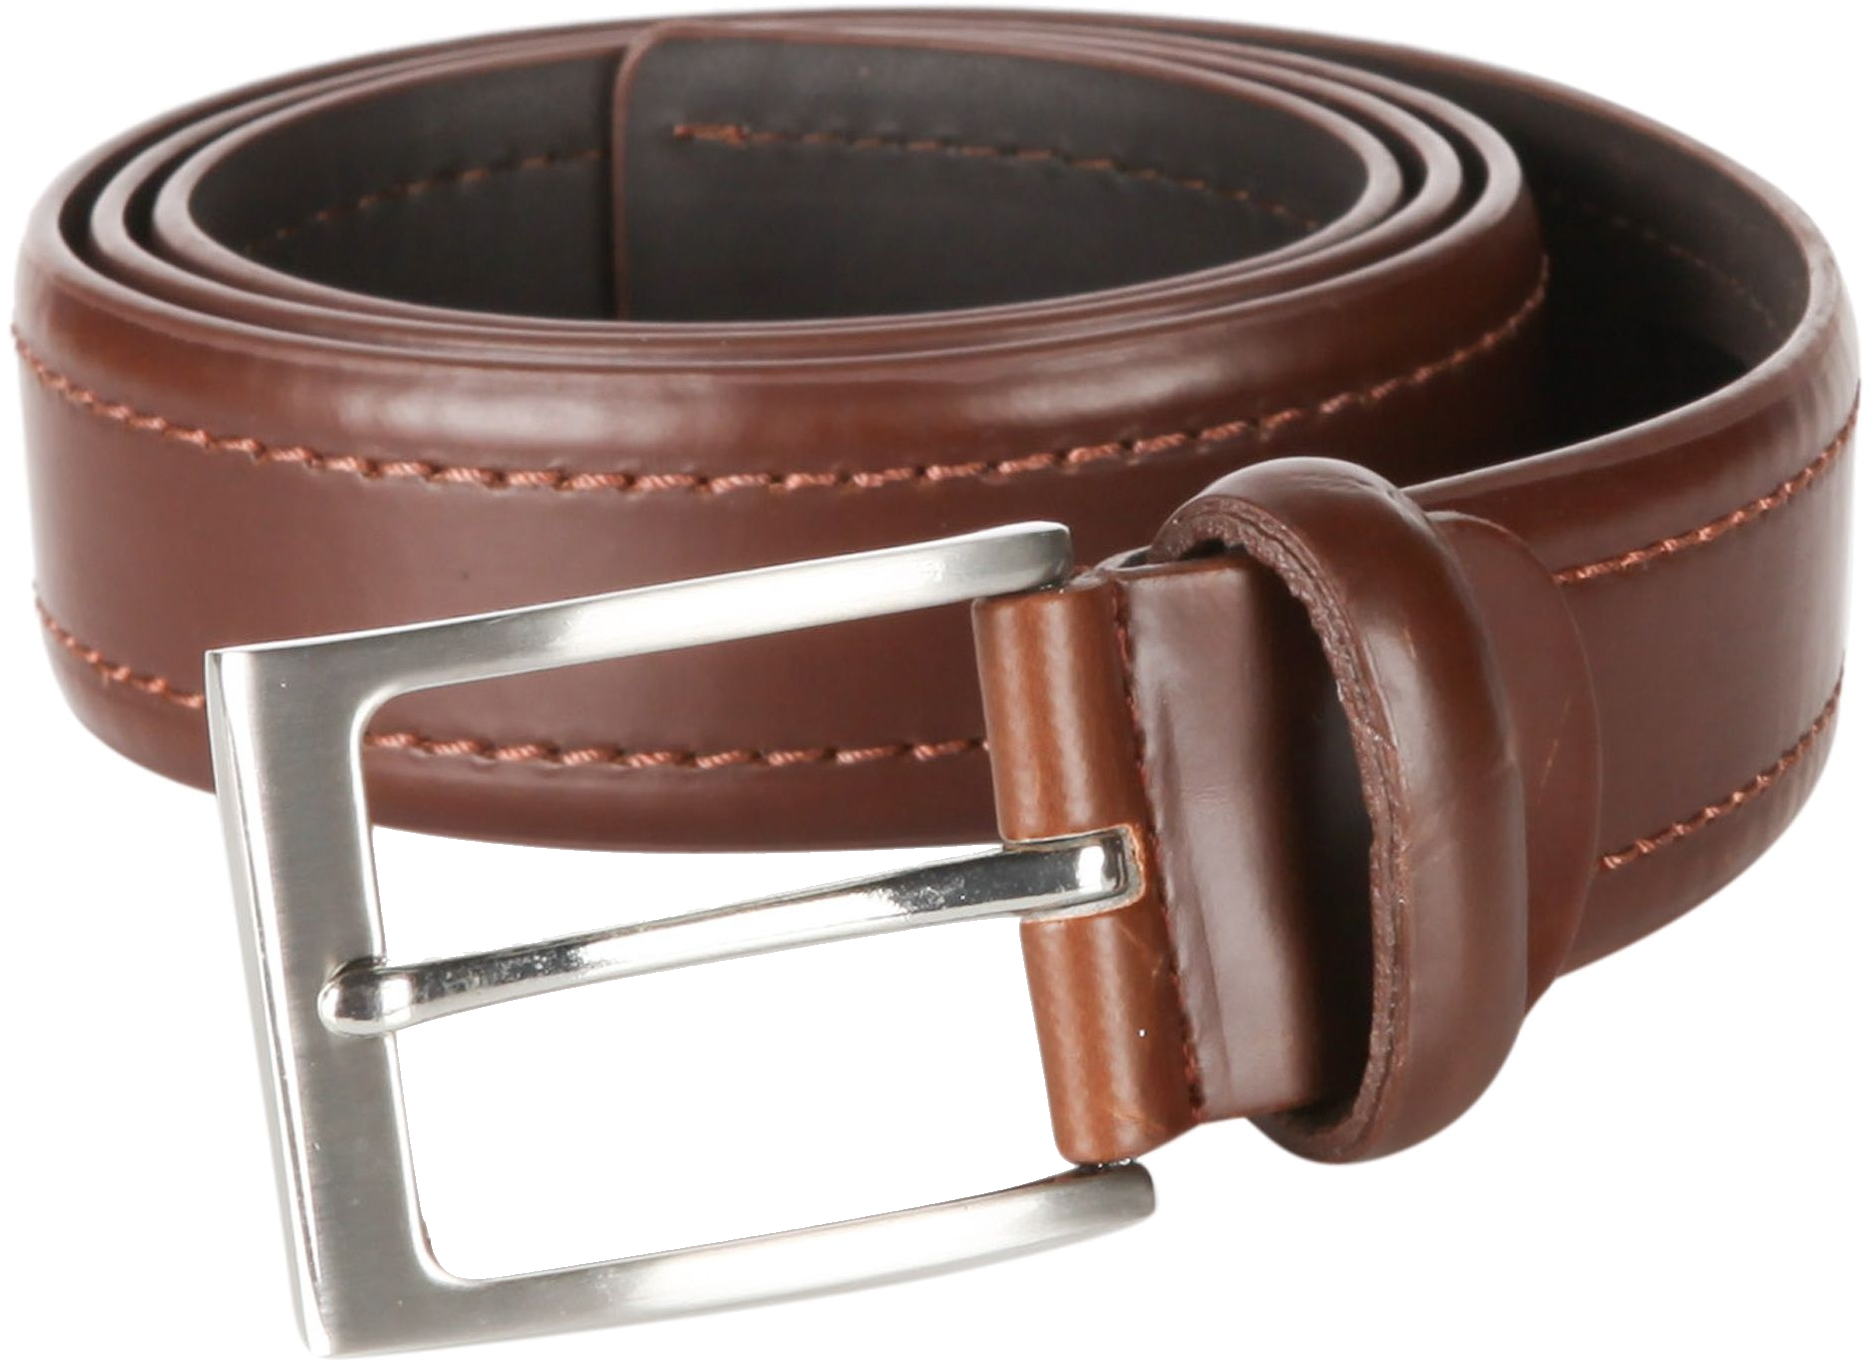 Leather Belt PNG Image